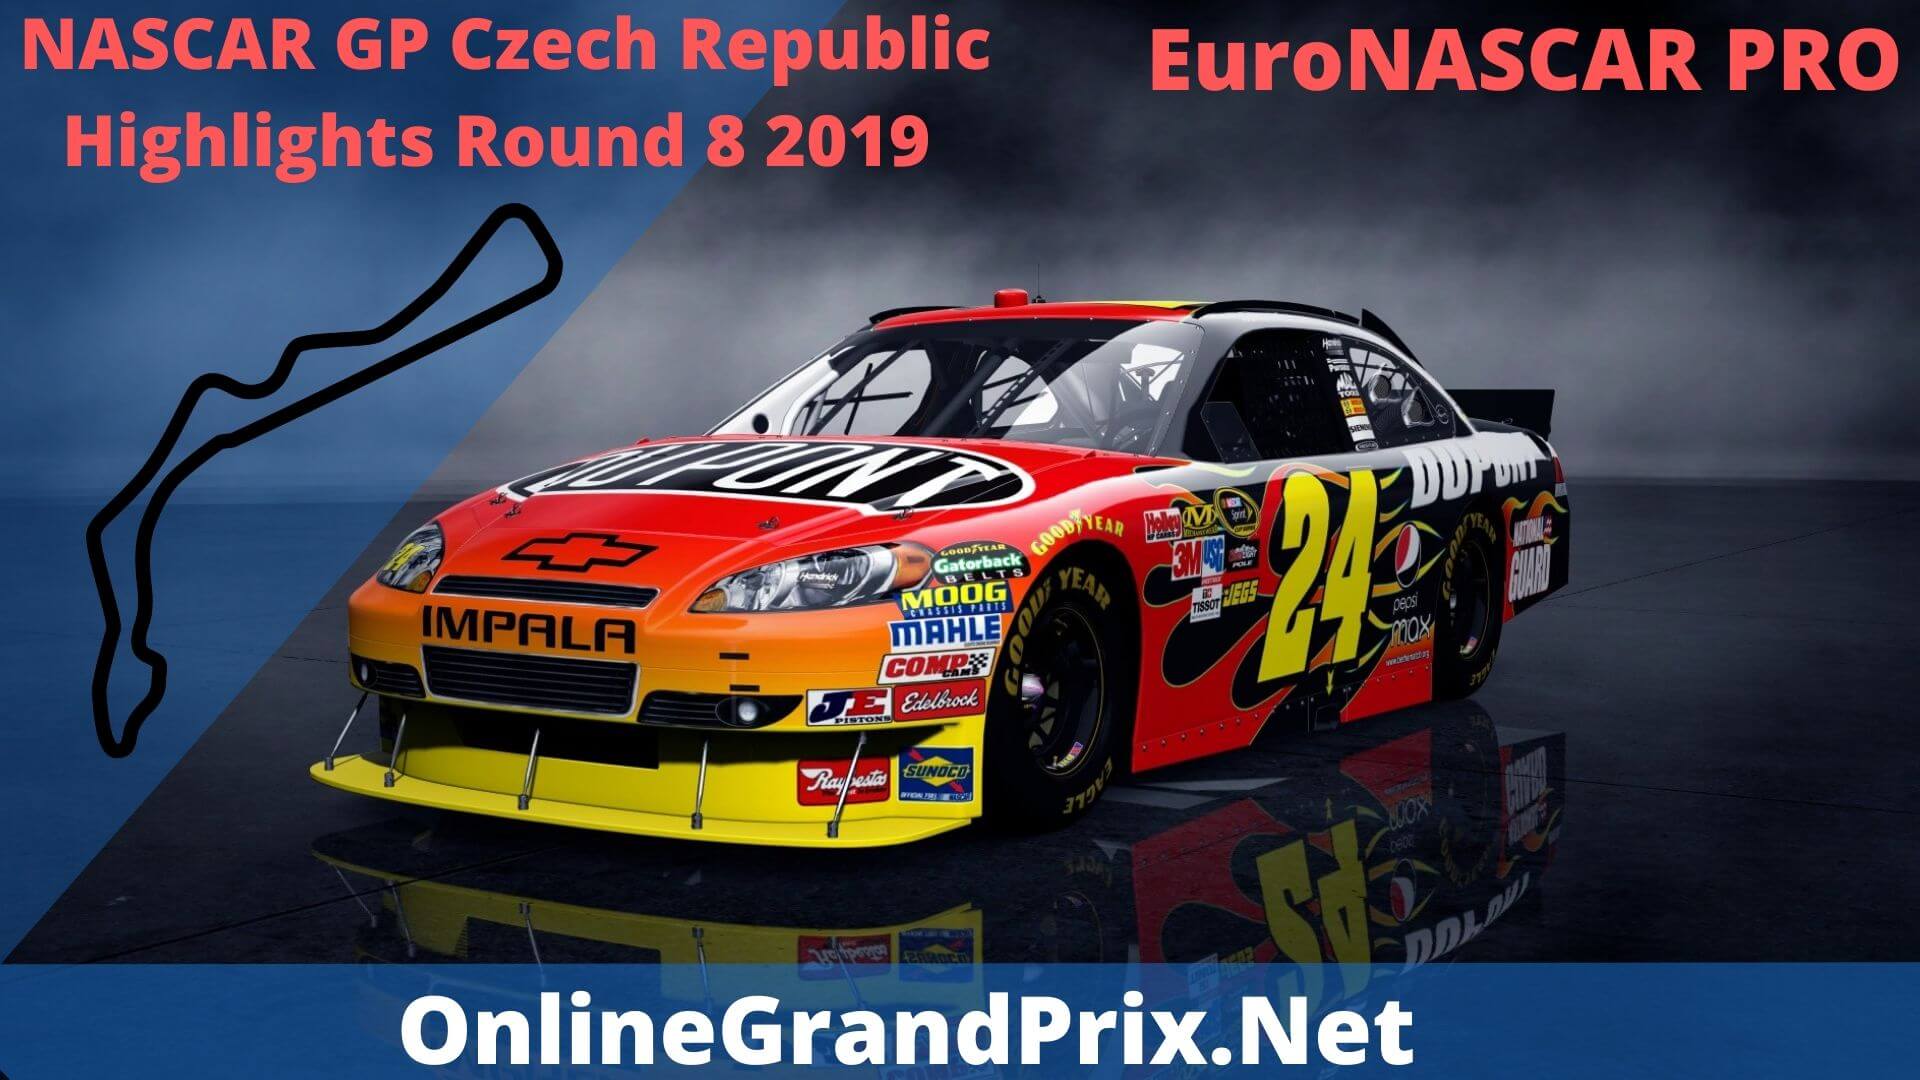 NASCAR GP Czech Republic Round 8 Highlights 2019